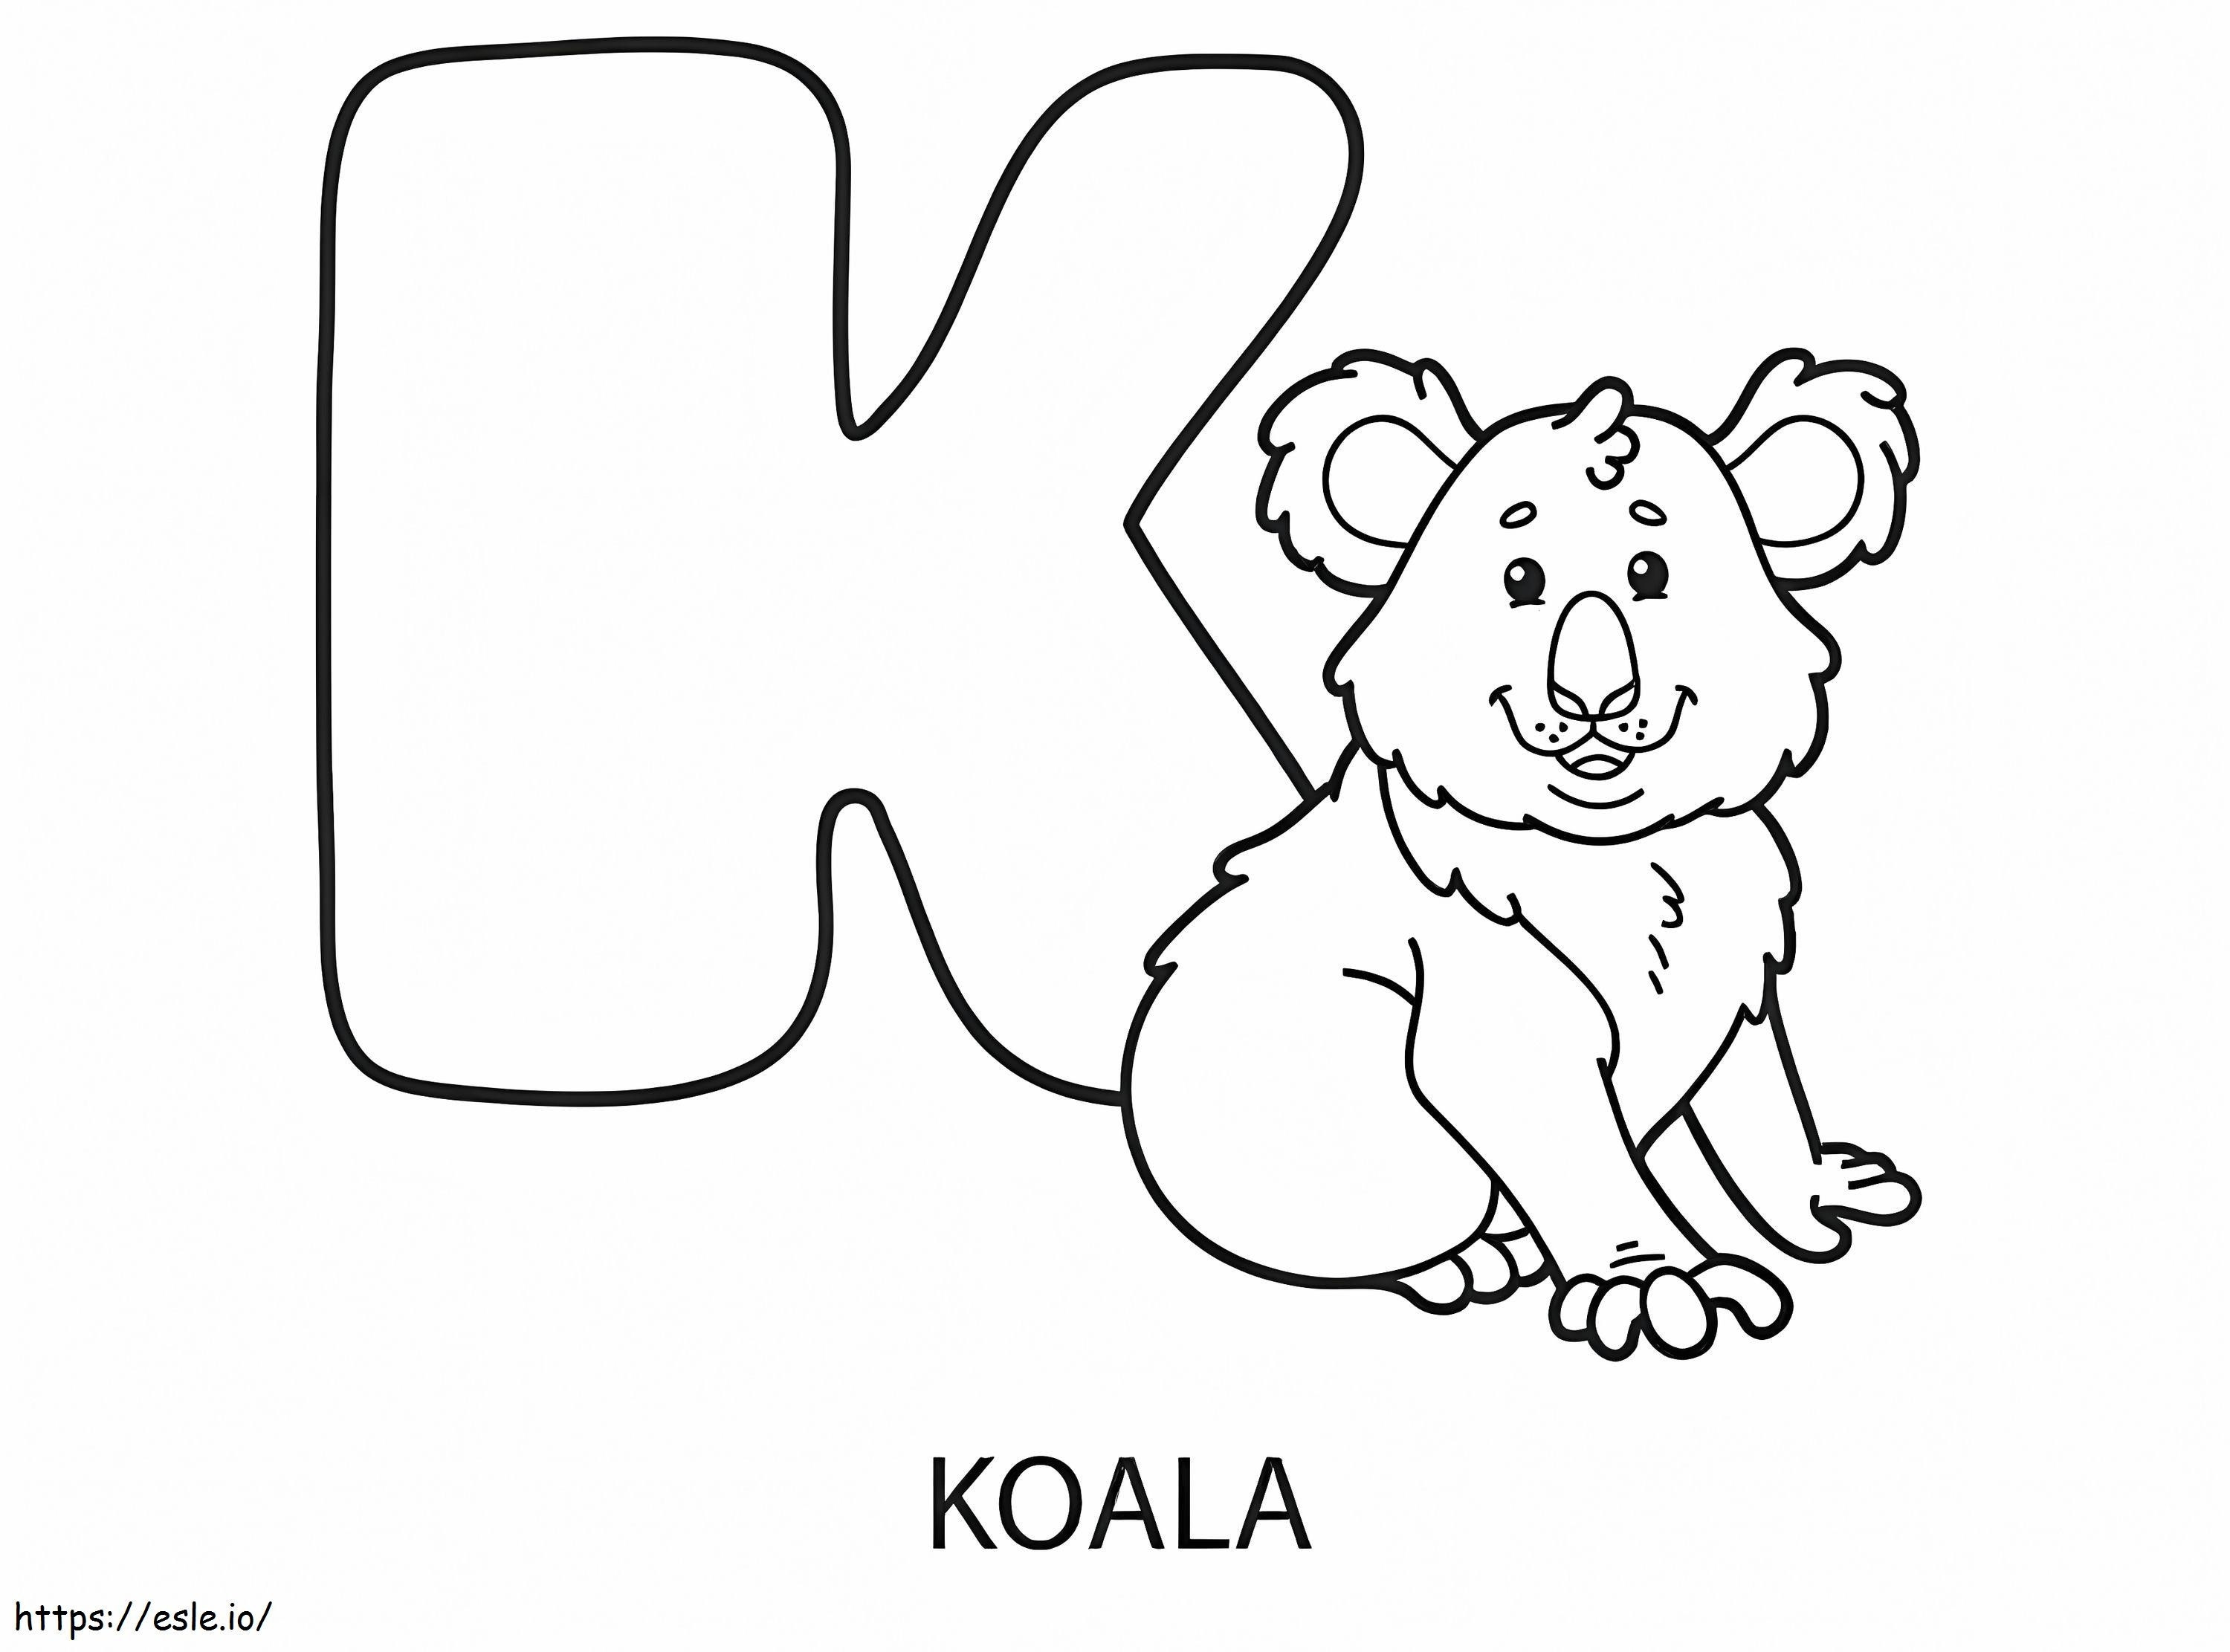 Litera K și Koala de colorat